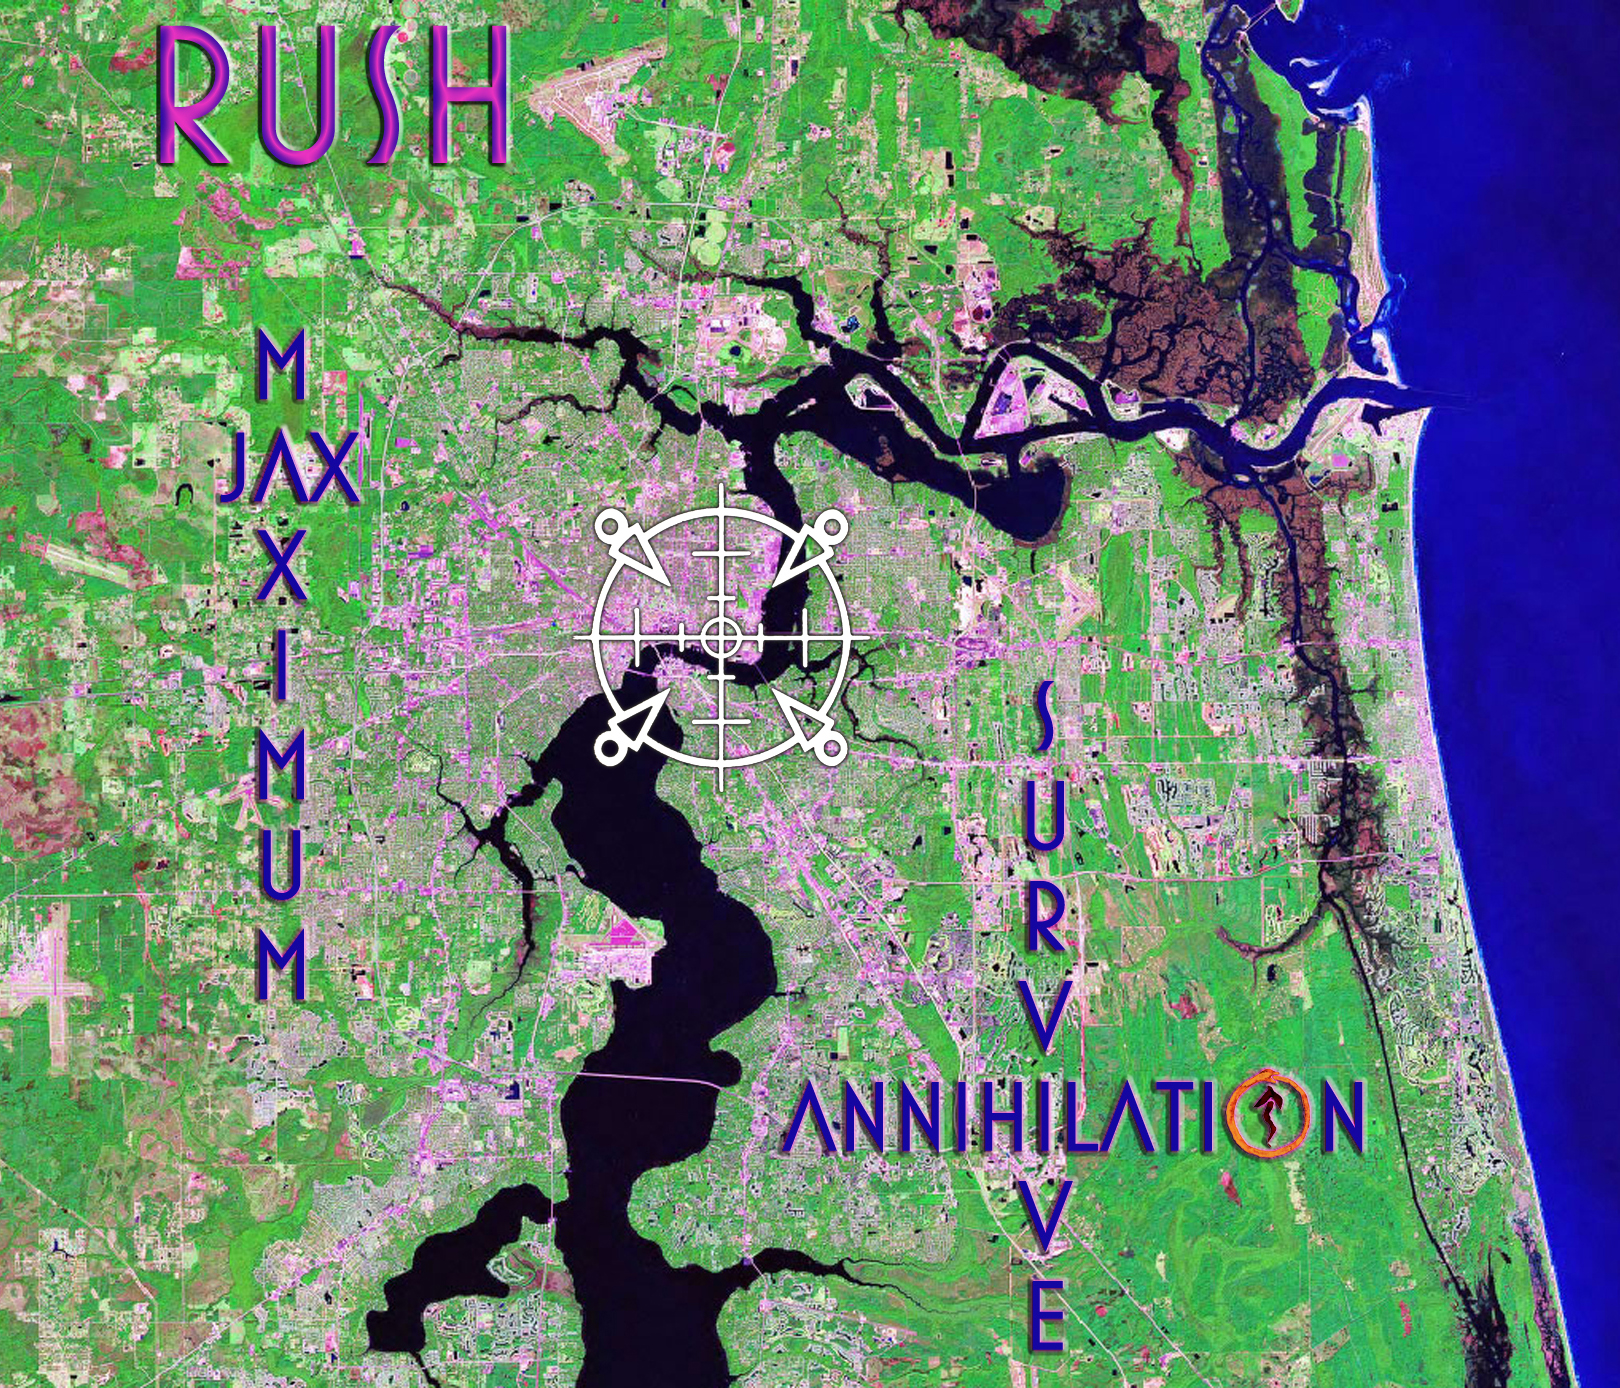 Rush - Maximum Jax - Survive Annihilation